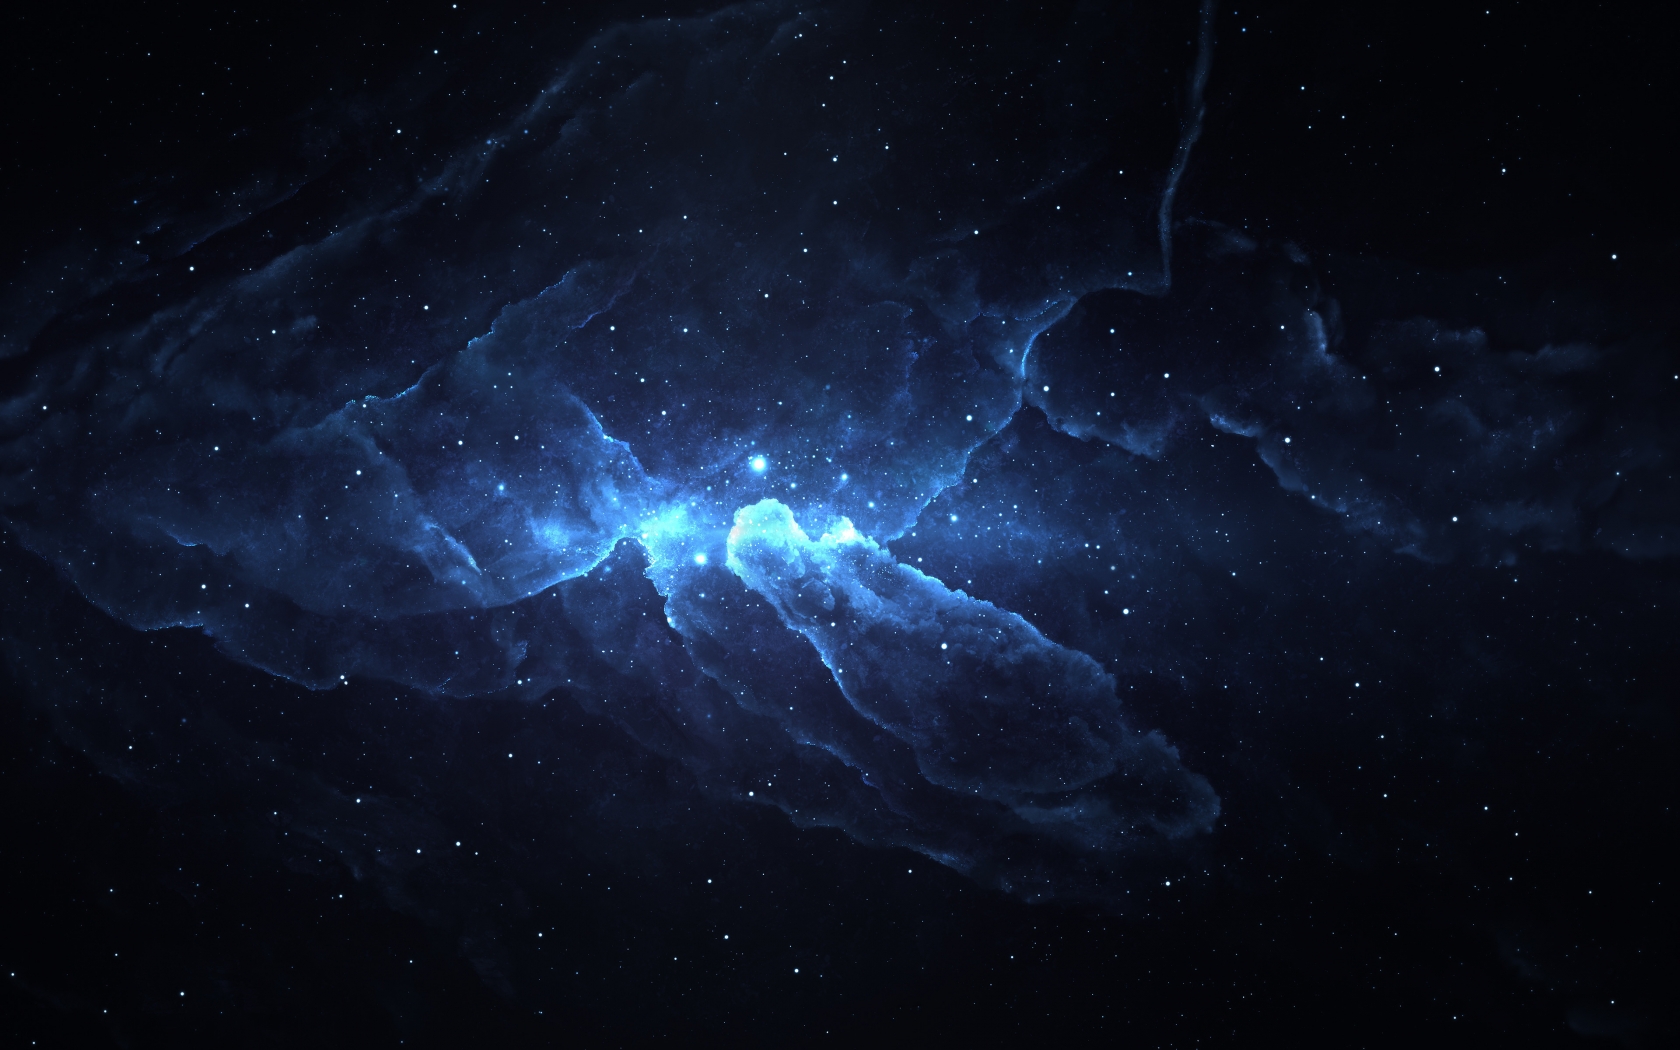 Atlantis Nebula 4 for 1680 x 1050 widescreen resolution